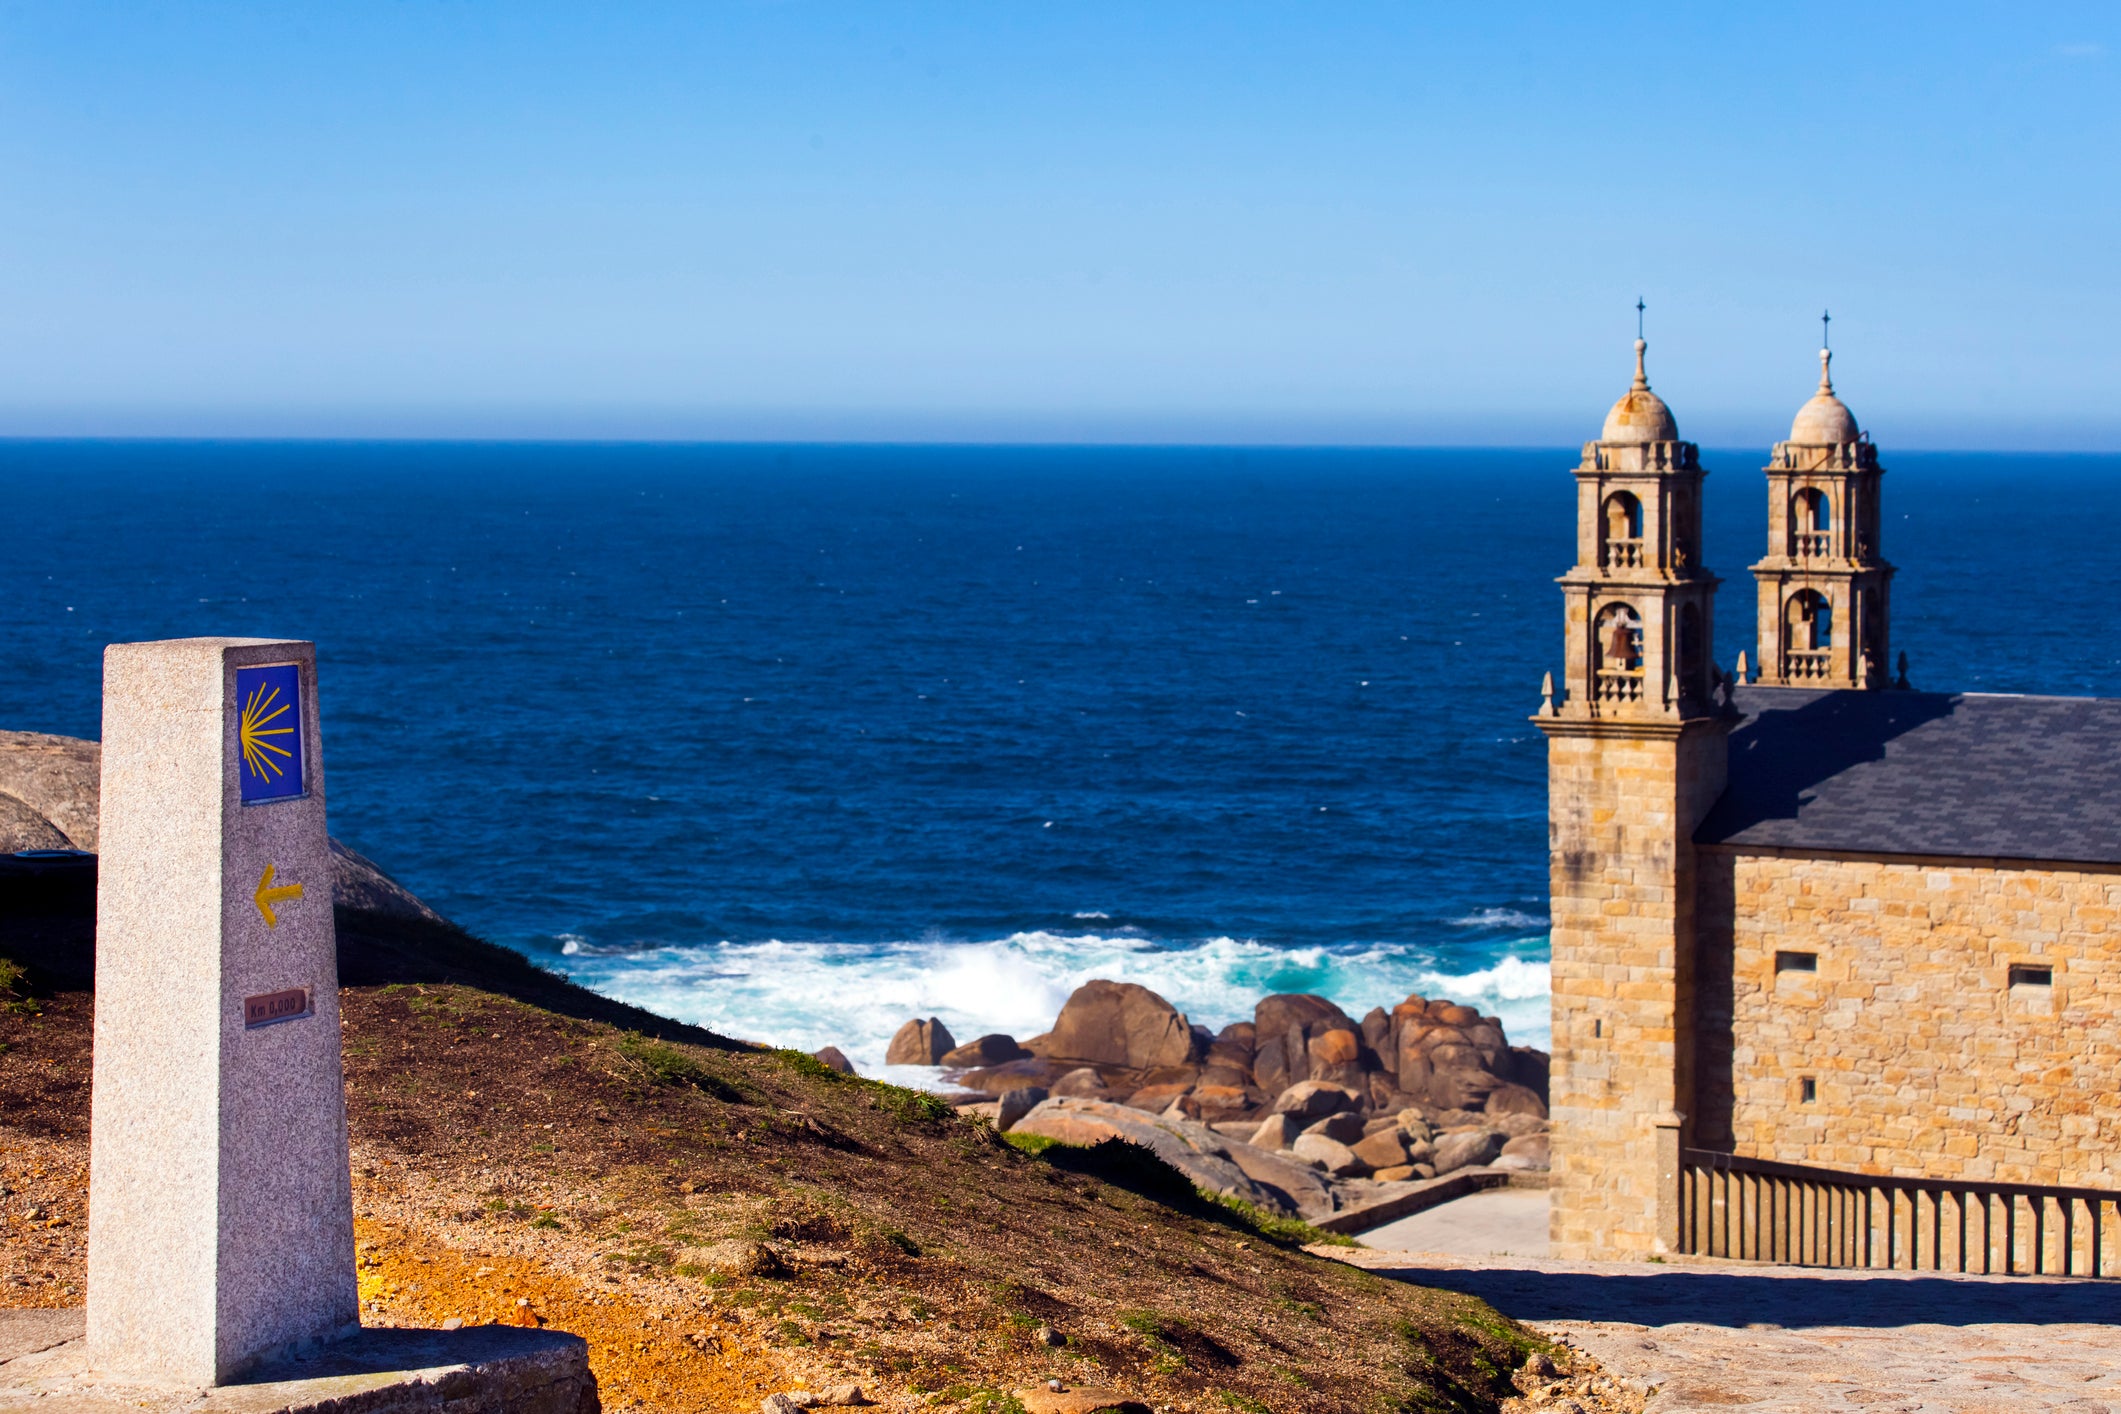 Follow the Atlantic Coast along the ancient pilgrimage route to Santiago de Compostela